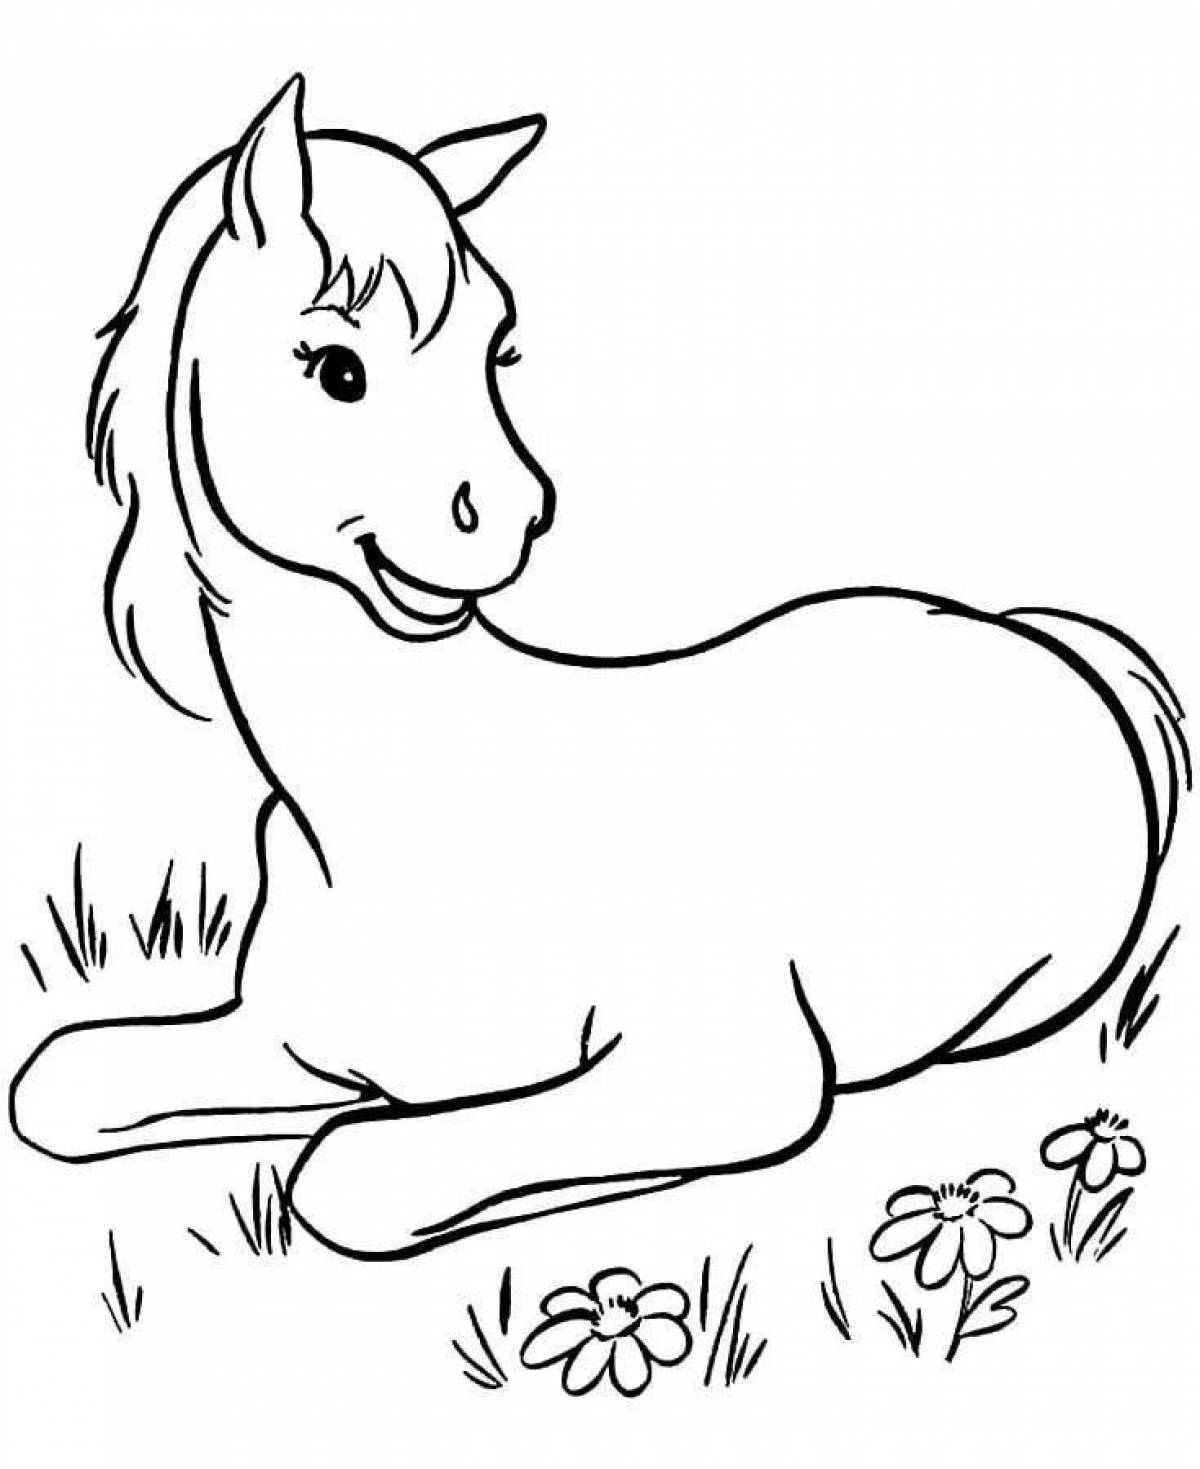 Раскрашиваем лошадку. Раскраска. Лошадка. Лошадка раскраска для детей. Раскраска конь. Рисунок лошади для раскрашивания.